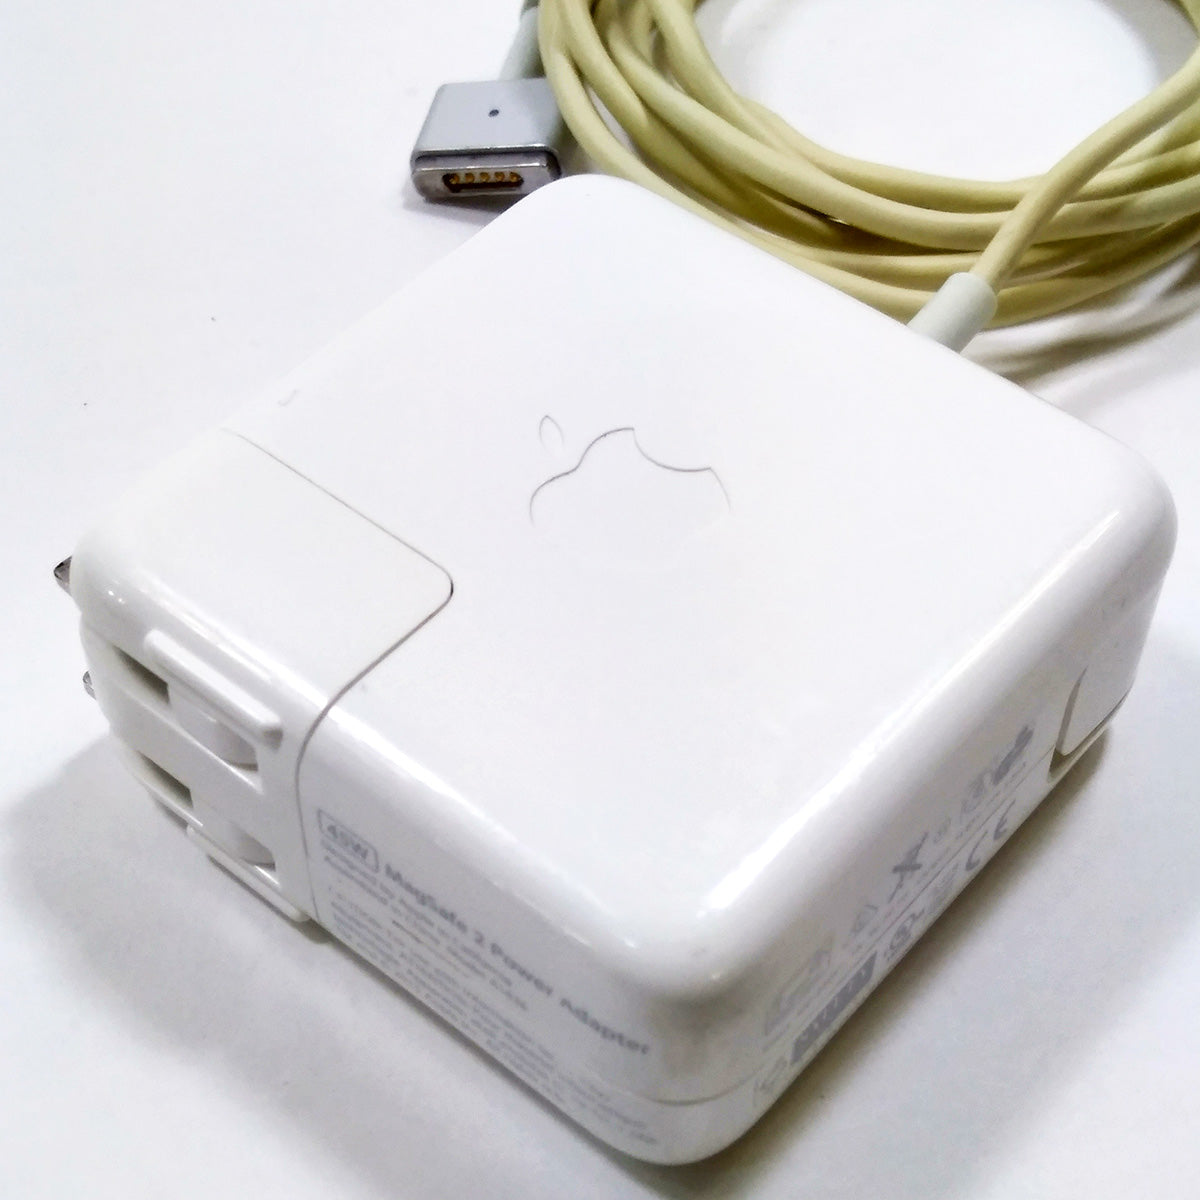 中古品】Apple 45W MagSafe 2電源アダプタ [A_MD592J/A] – 秋葉館